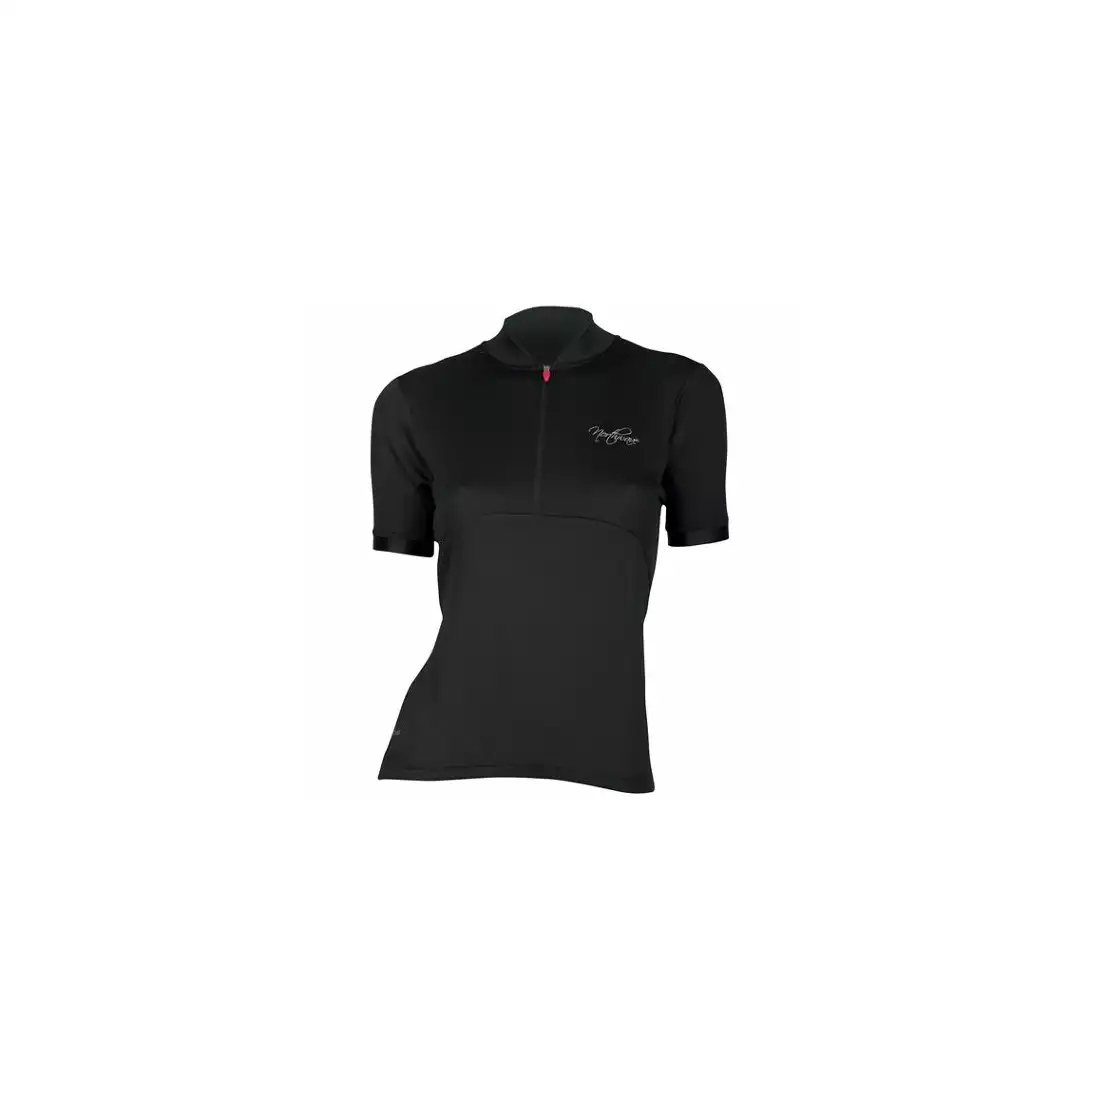 NORTHWAVE CRYSTAL - damska koszulka rowerowa, czarna